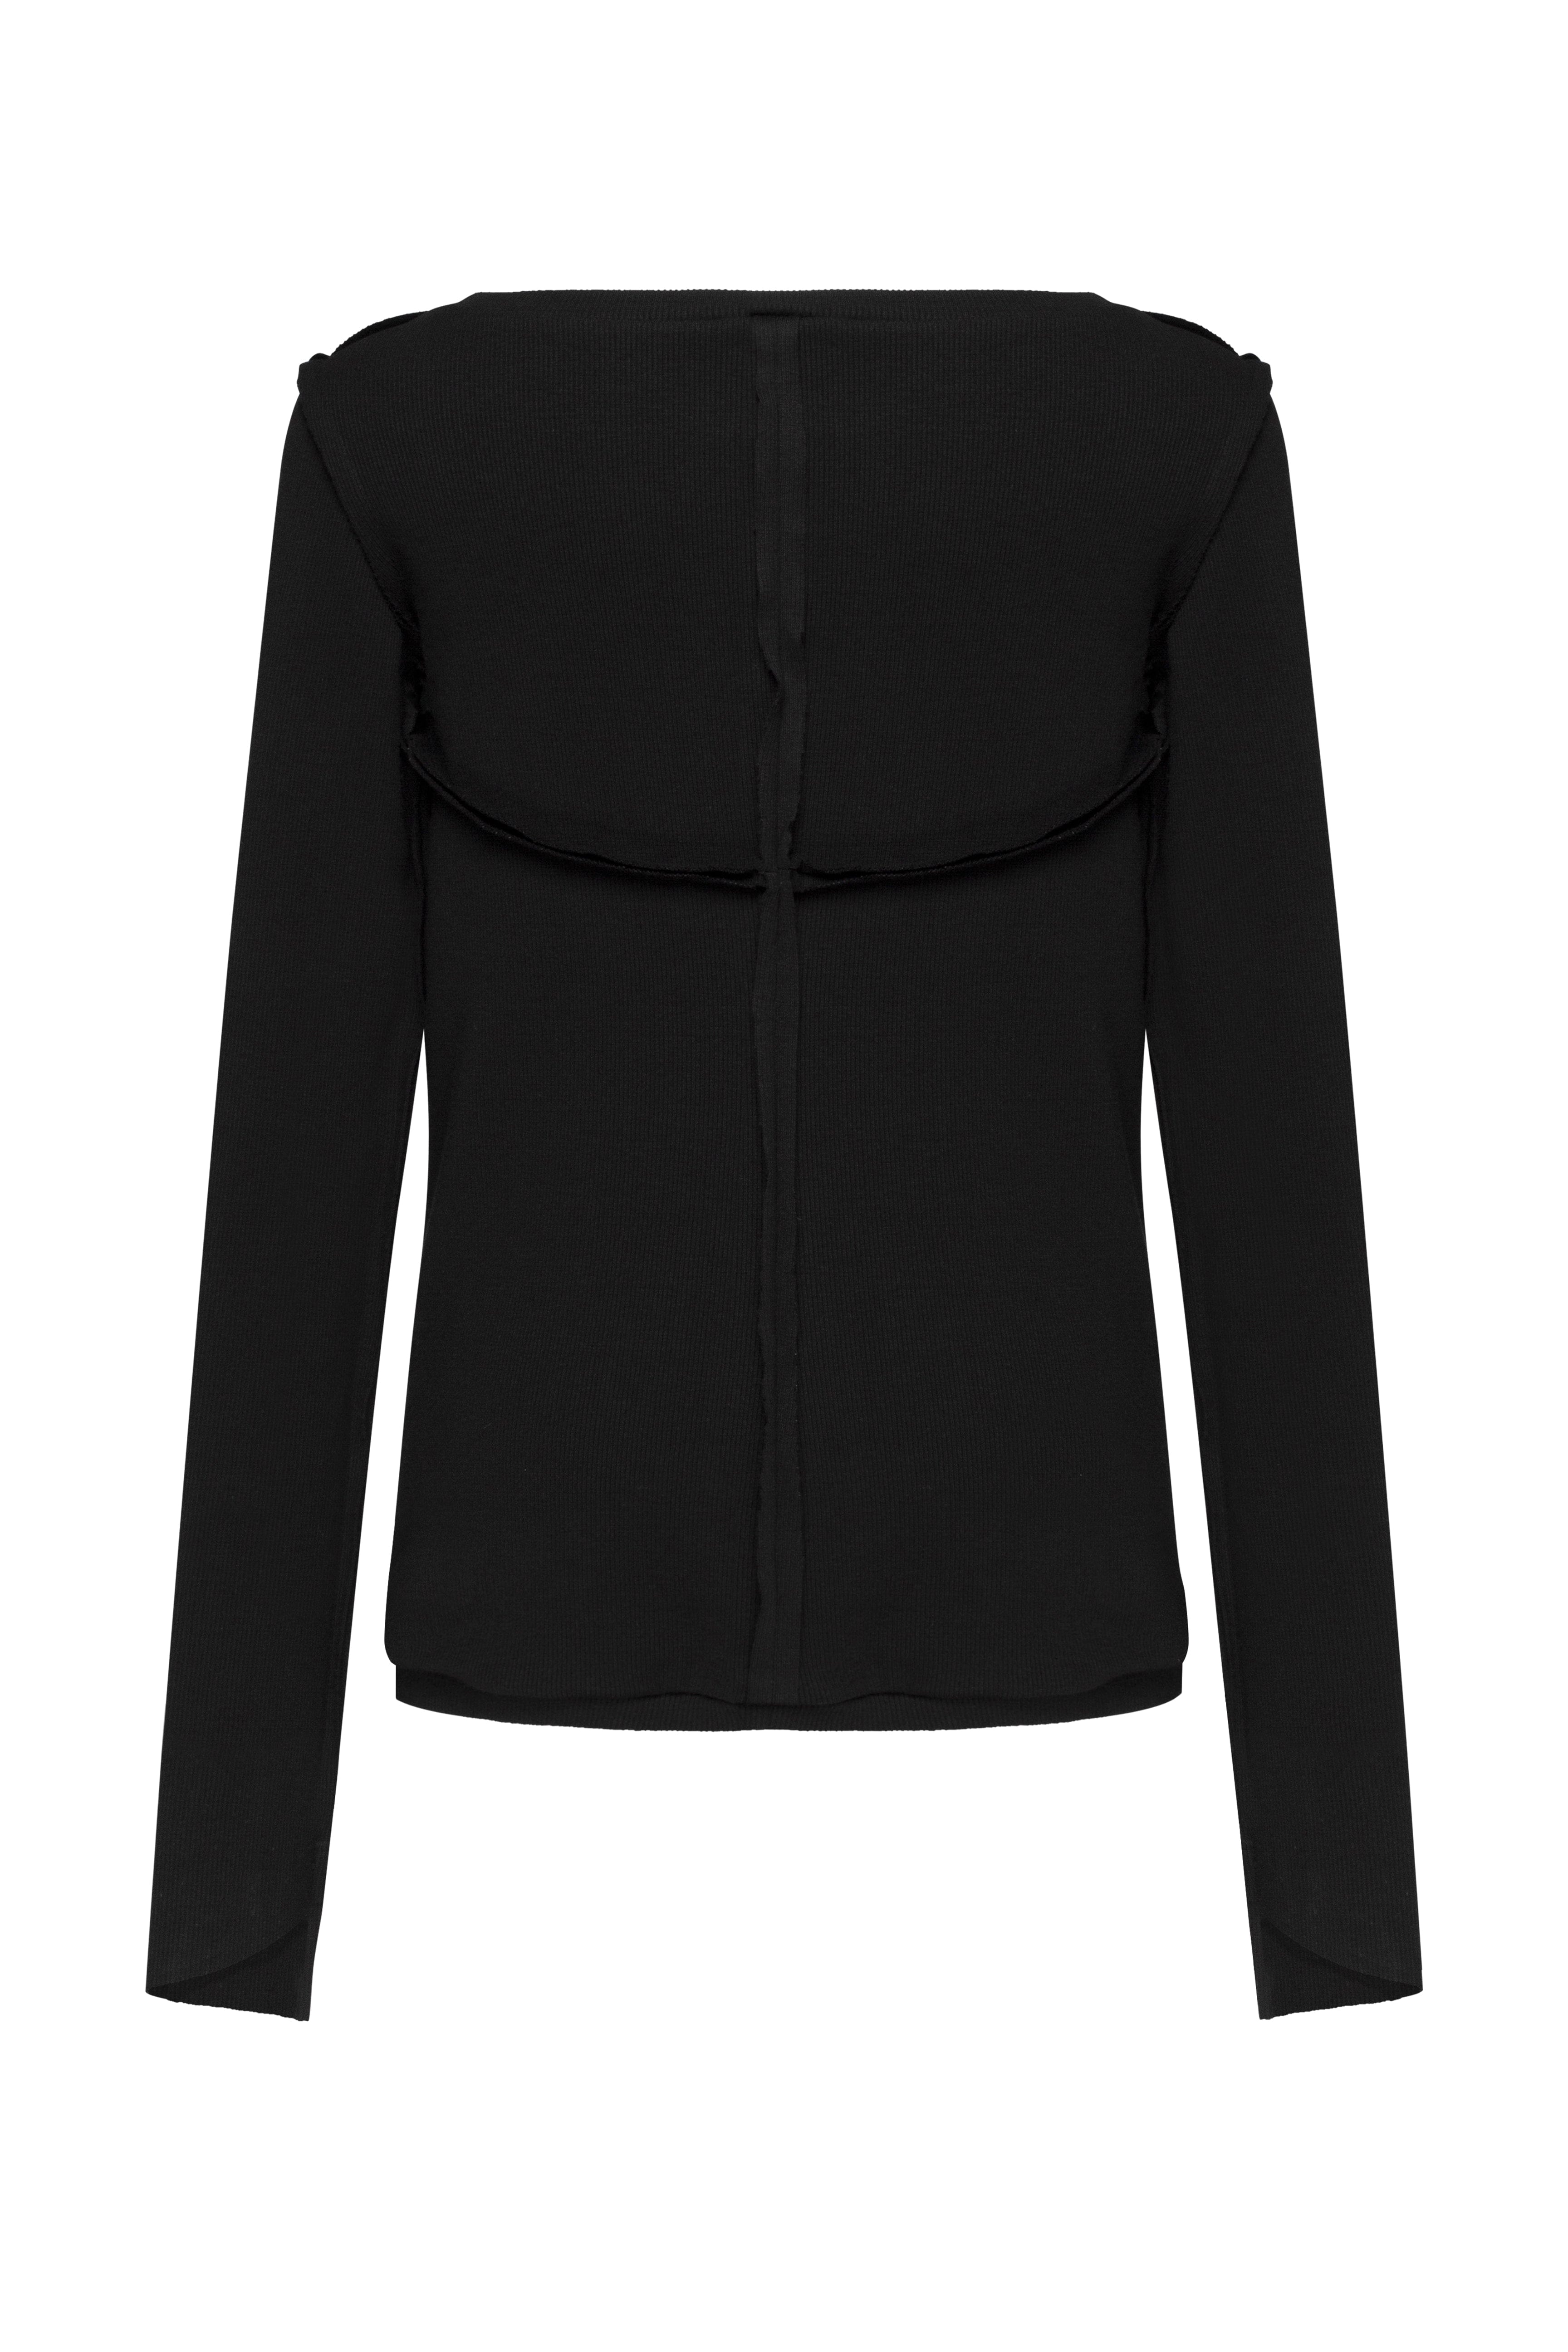 MDNT45 Sweaters, Tunics & Tops Black gothic jumper